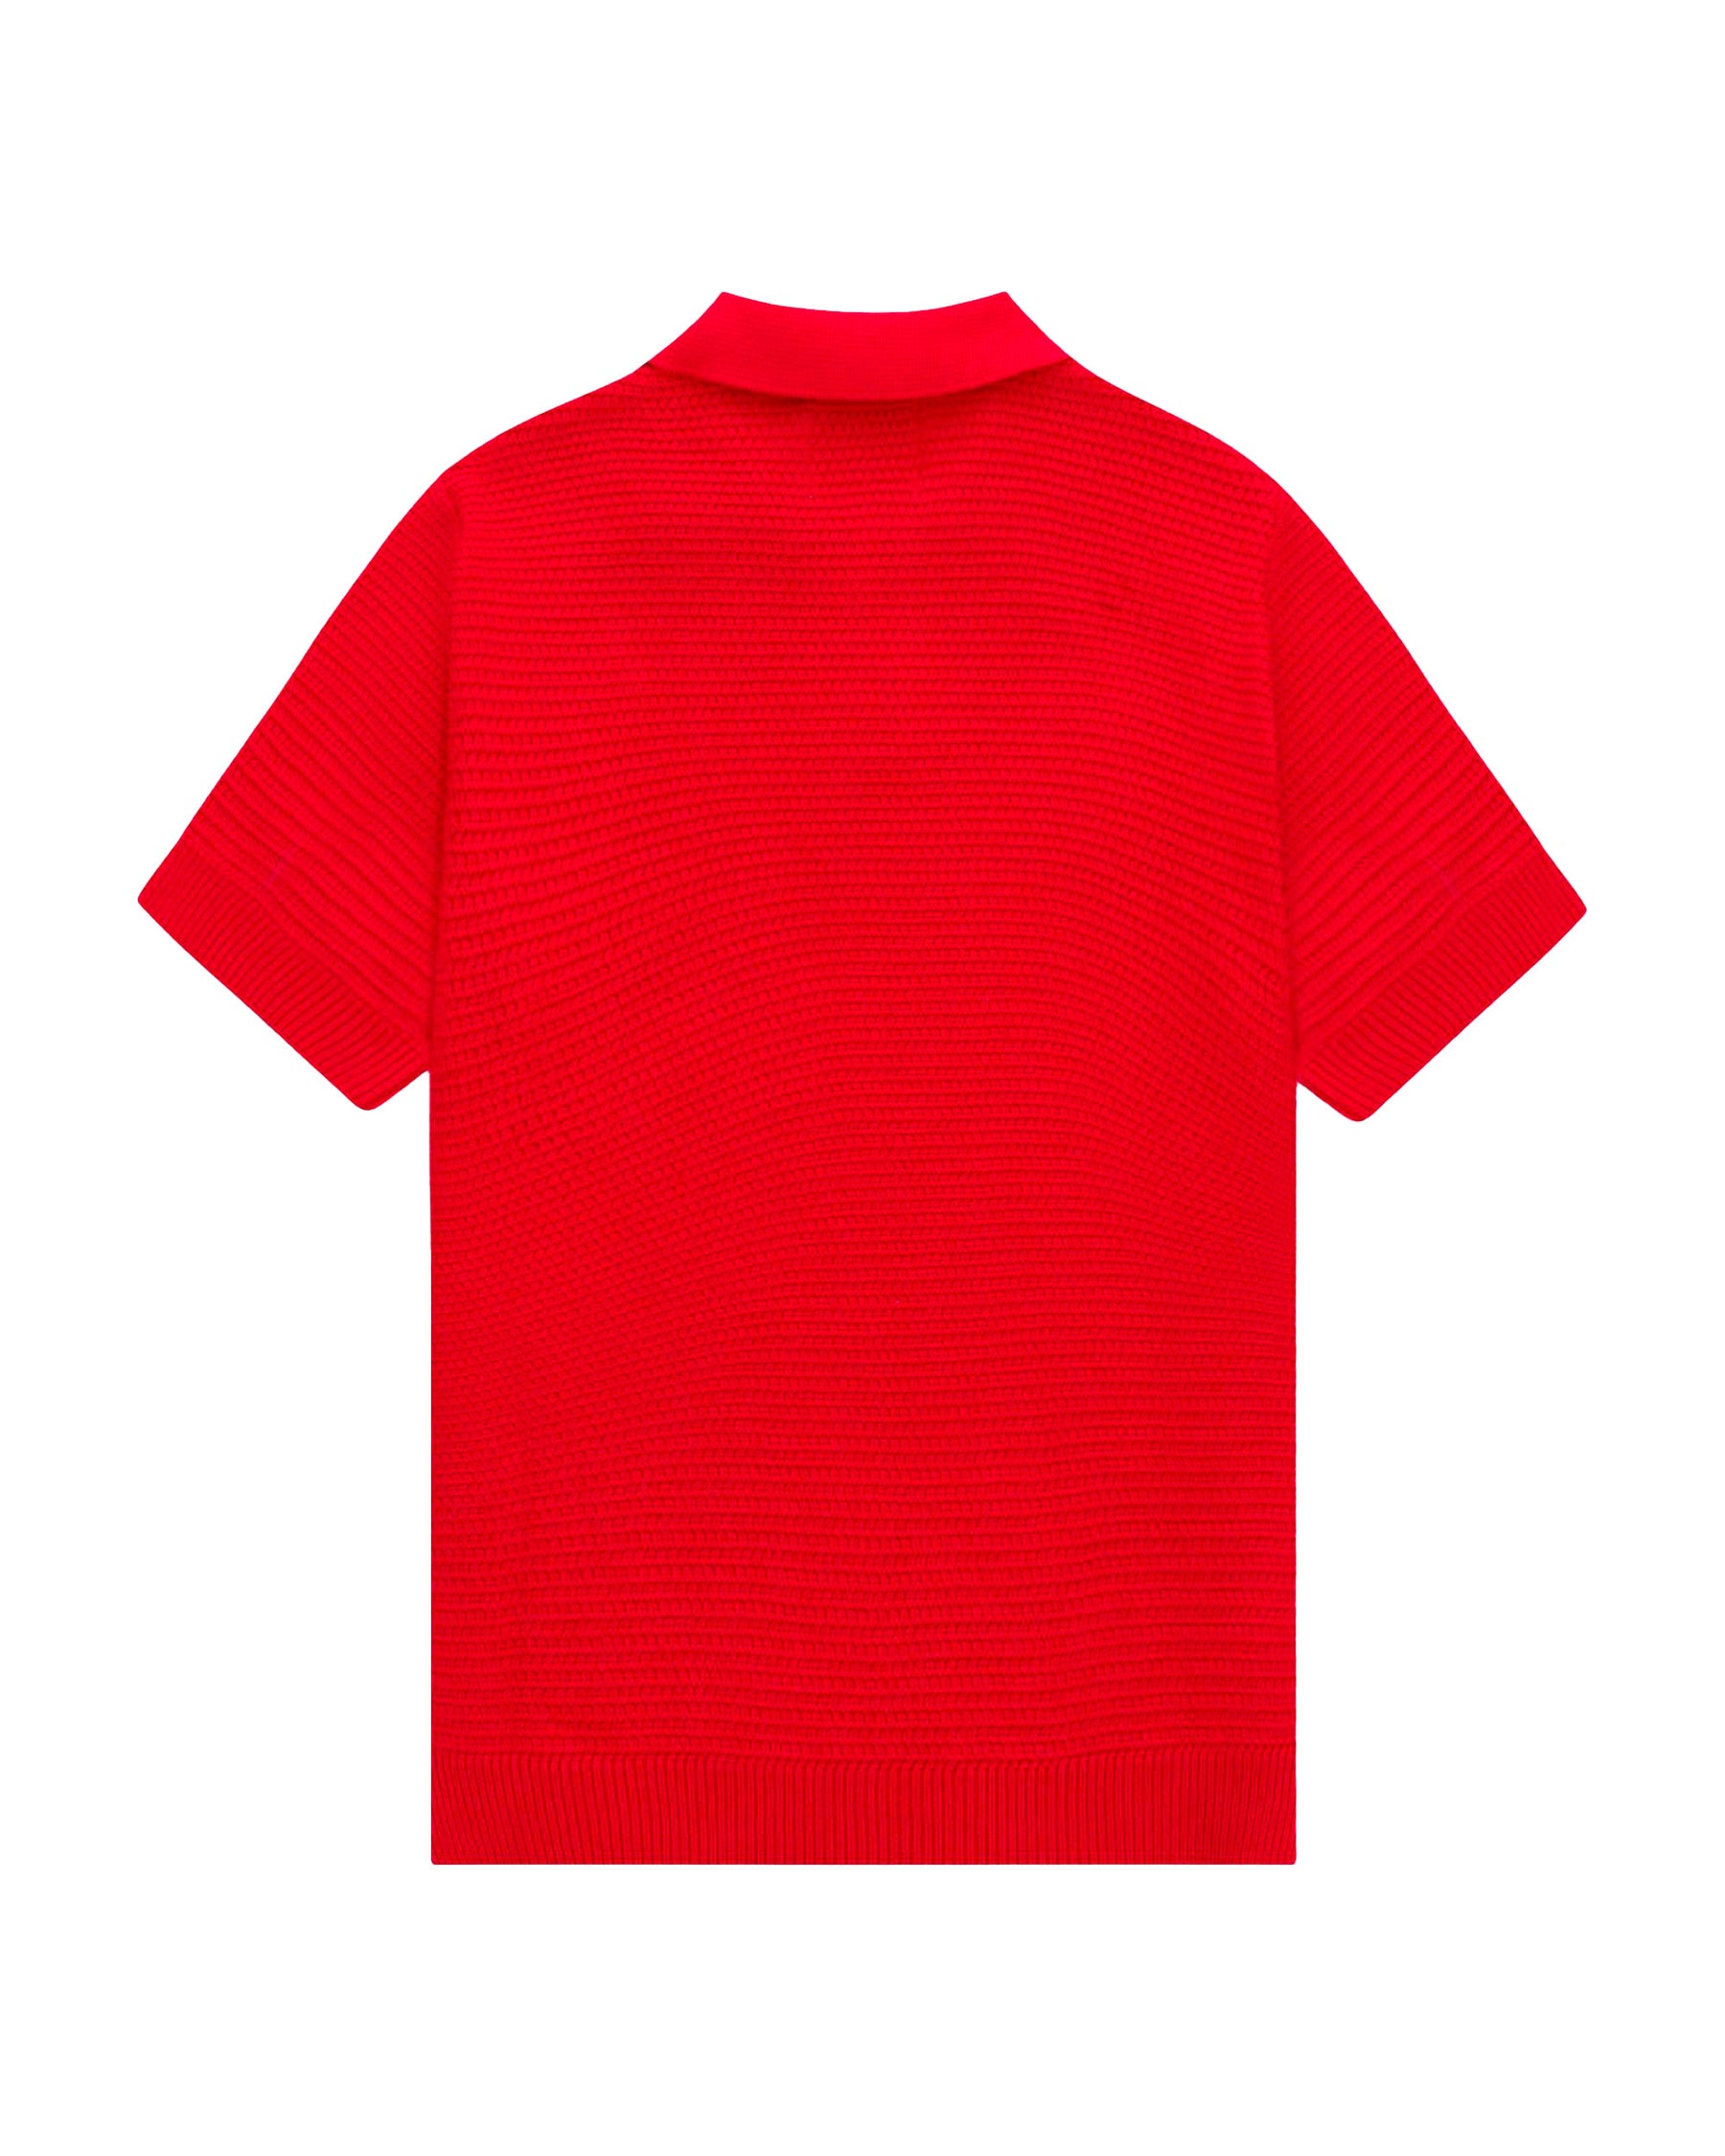 Polo Arte Antwerp Simon Knit Shirt Rosso